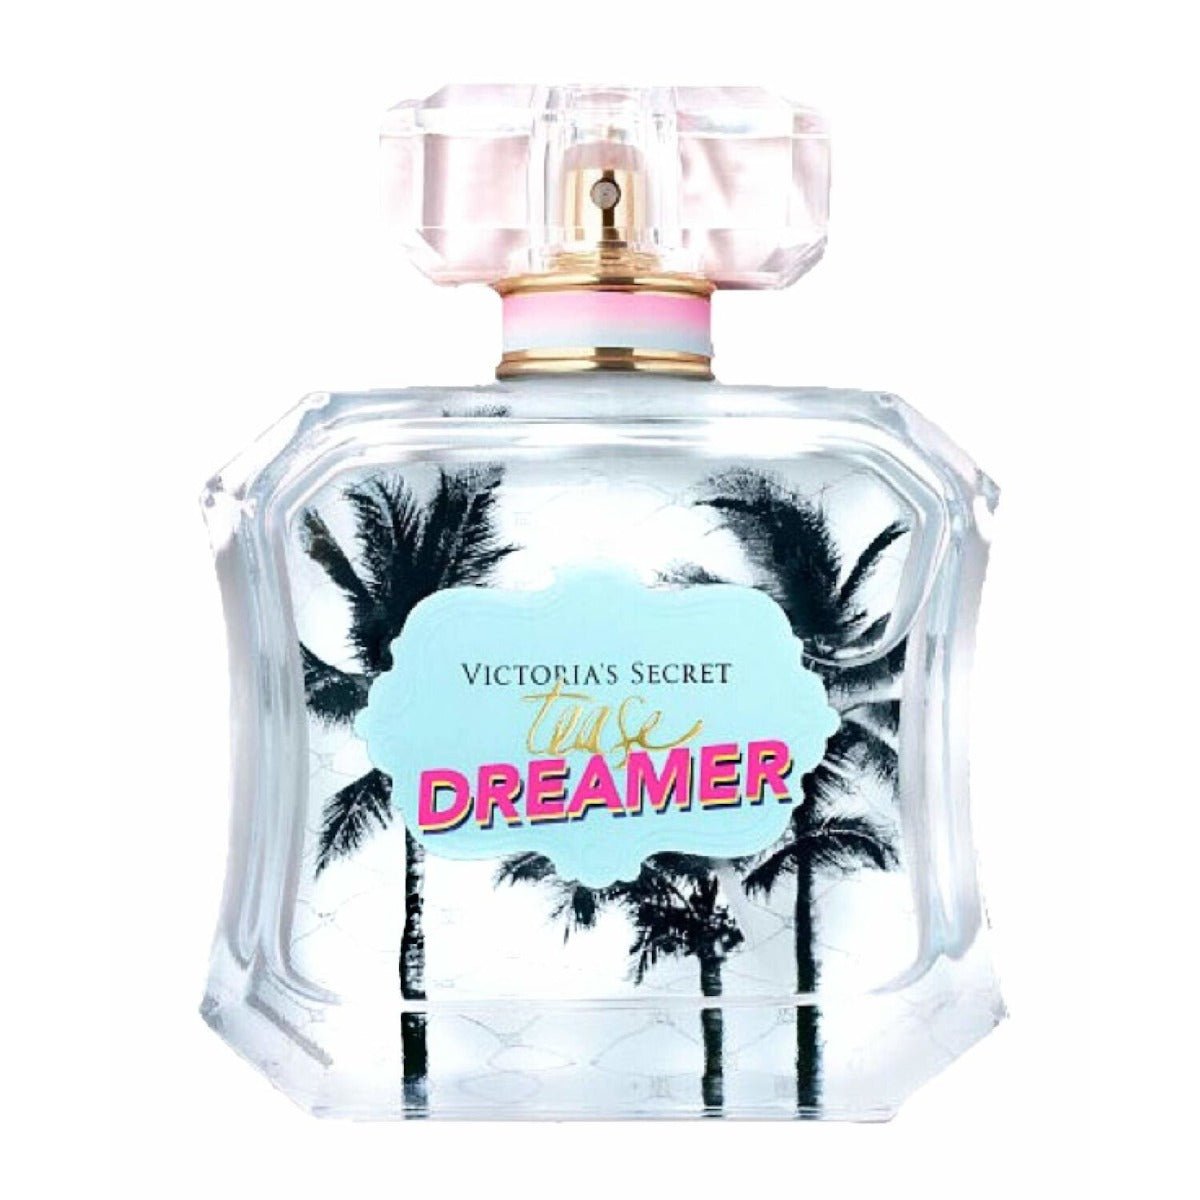 Victoria Secret Tease Dreamer Edp For Women 100 Ml -Perfume - AllurebeautypkVictoria Secret Tease Dreamer Edp For Women 100 Ml -Perfume